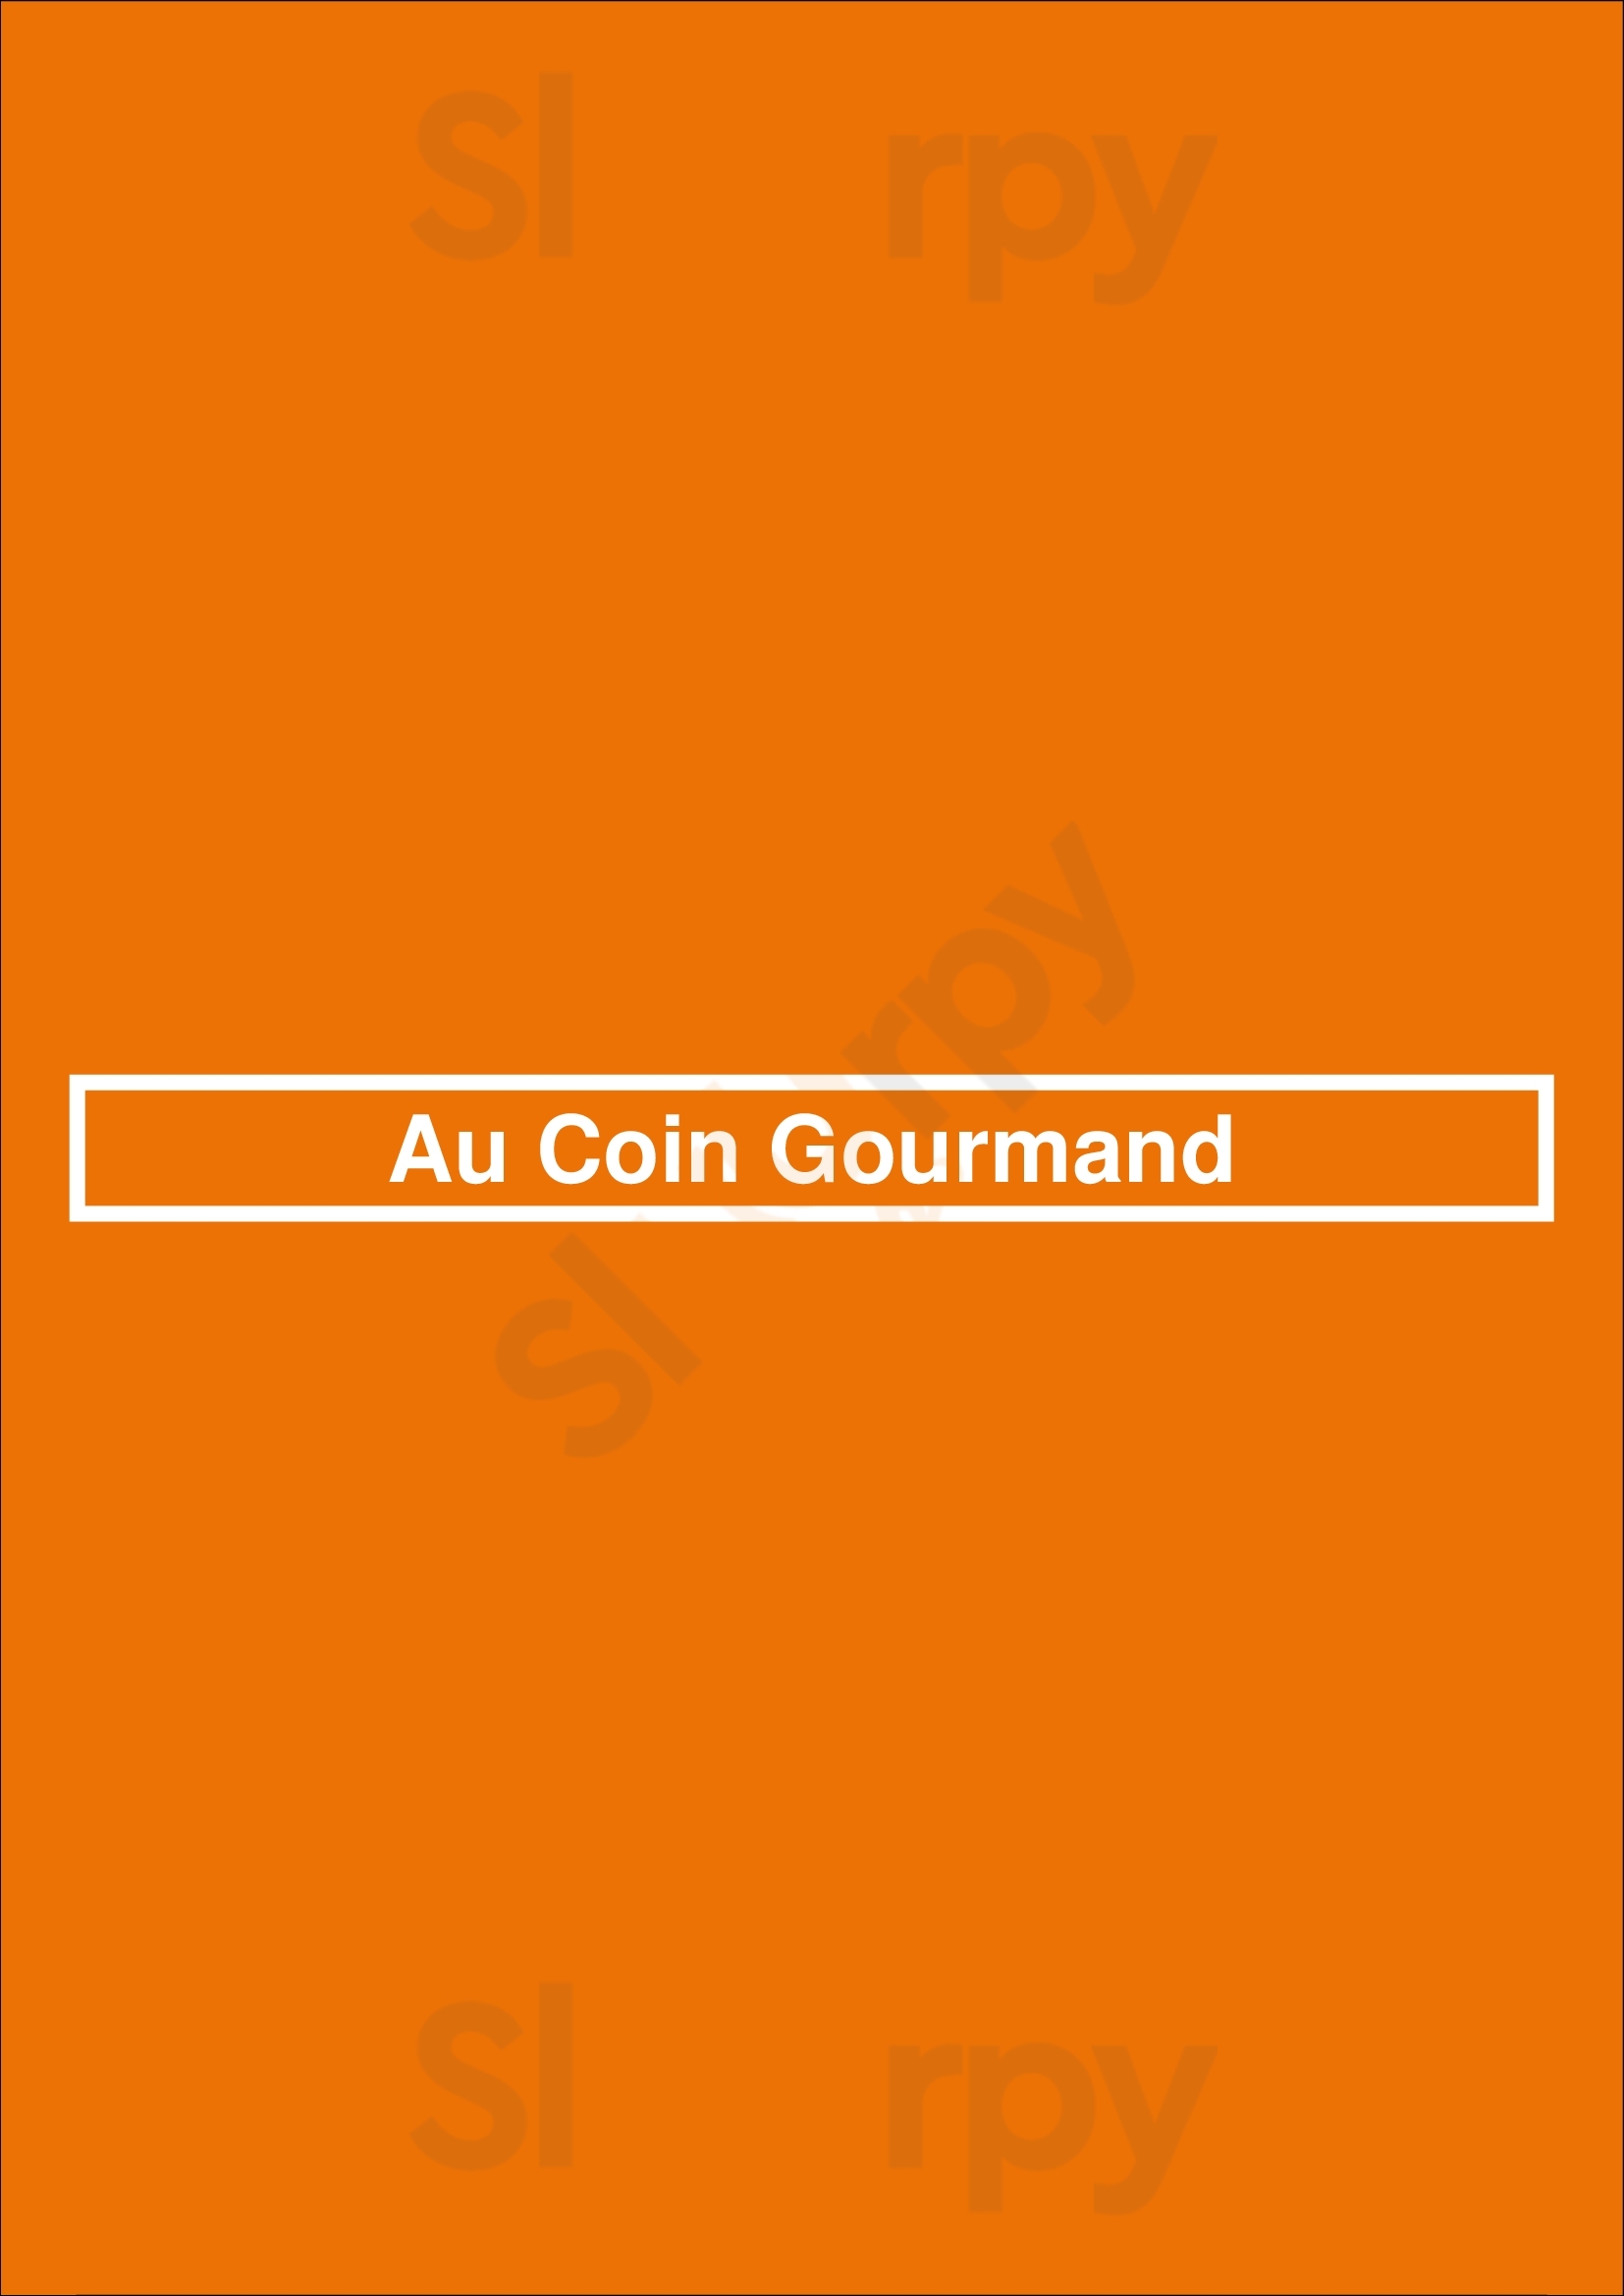 Au Coin Gourmand Bruxelles Menu - 1